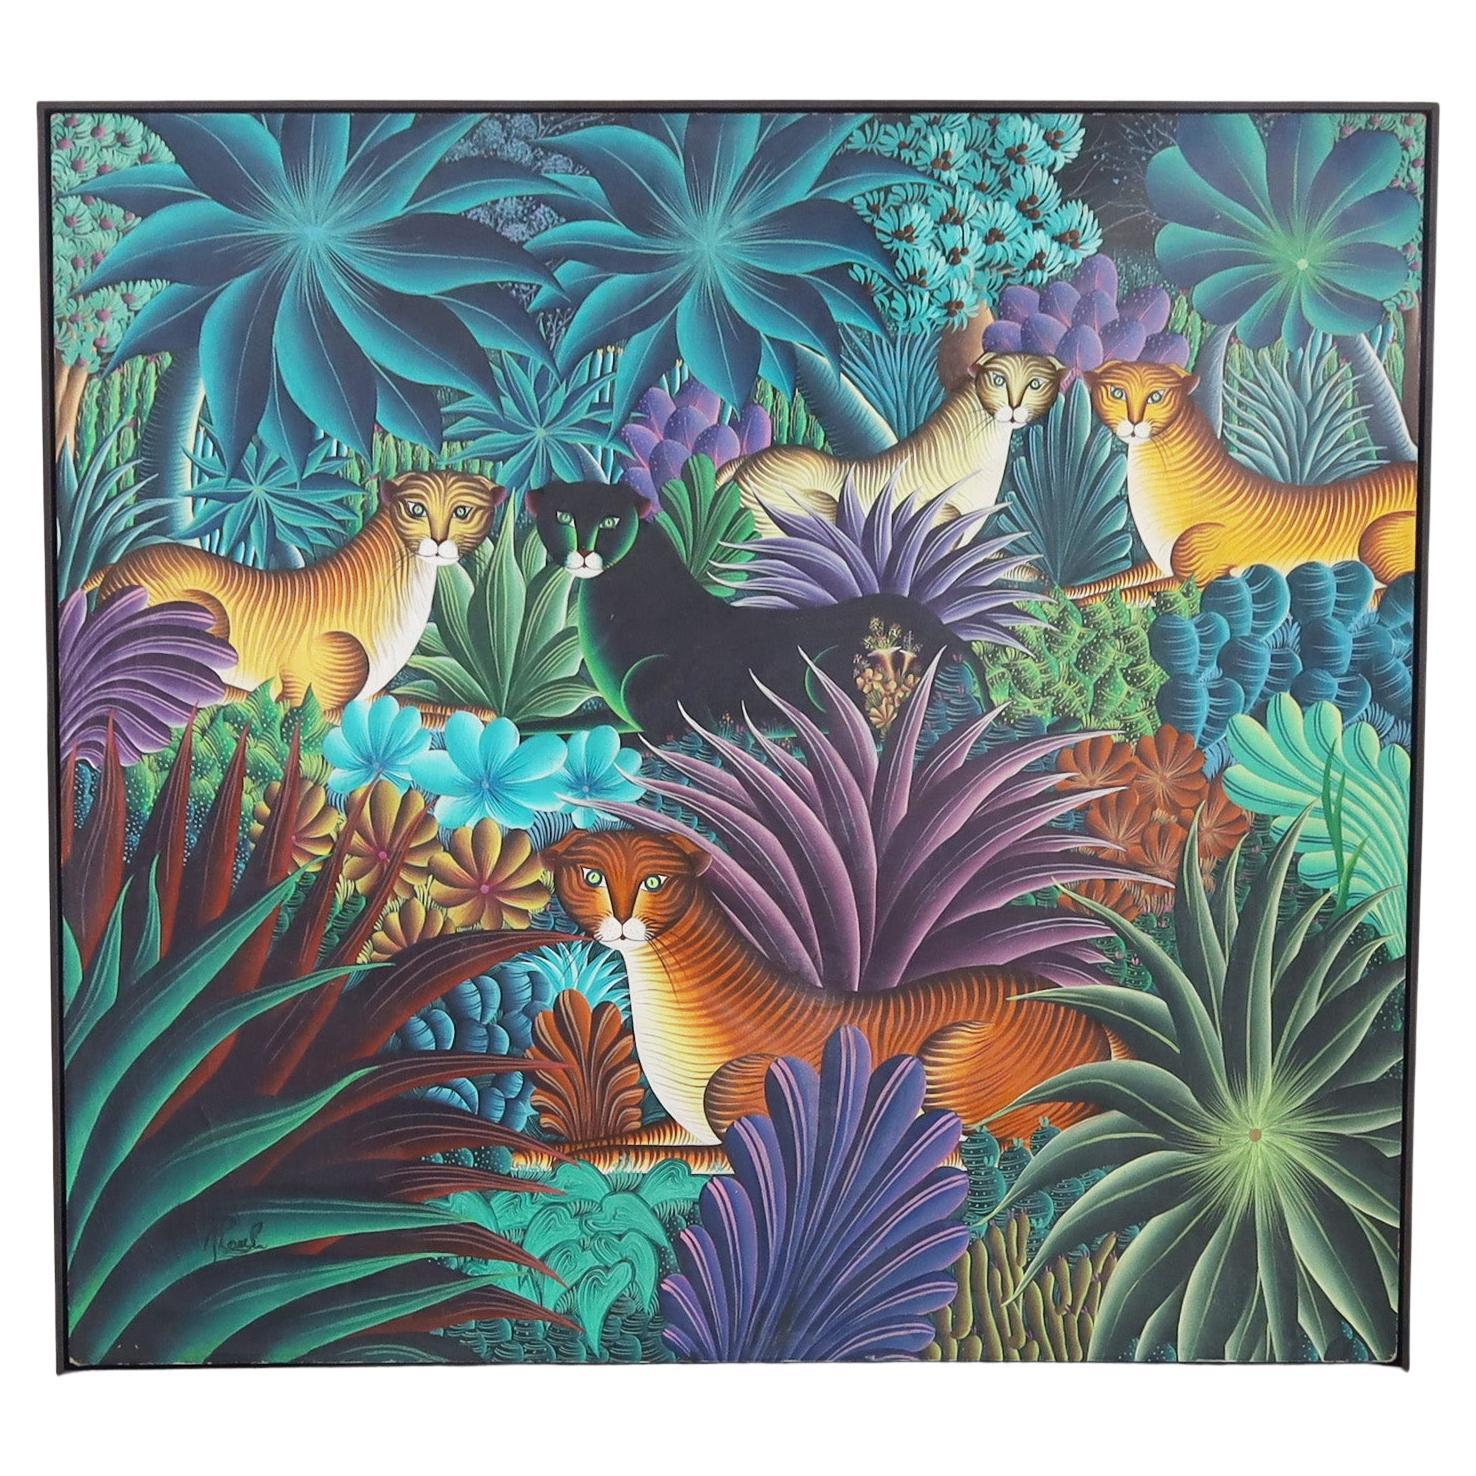 Gemälde auf Leinwand von Katzen in einem Dschungel